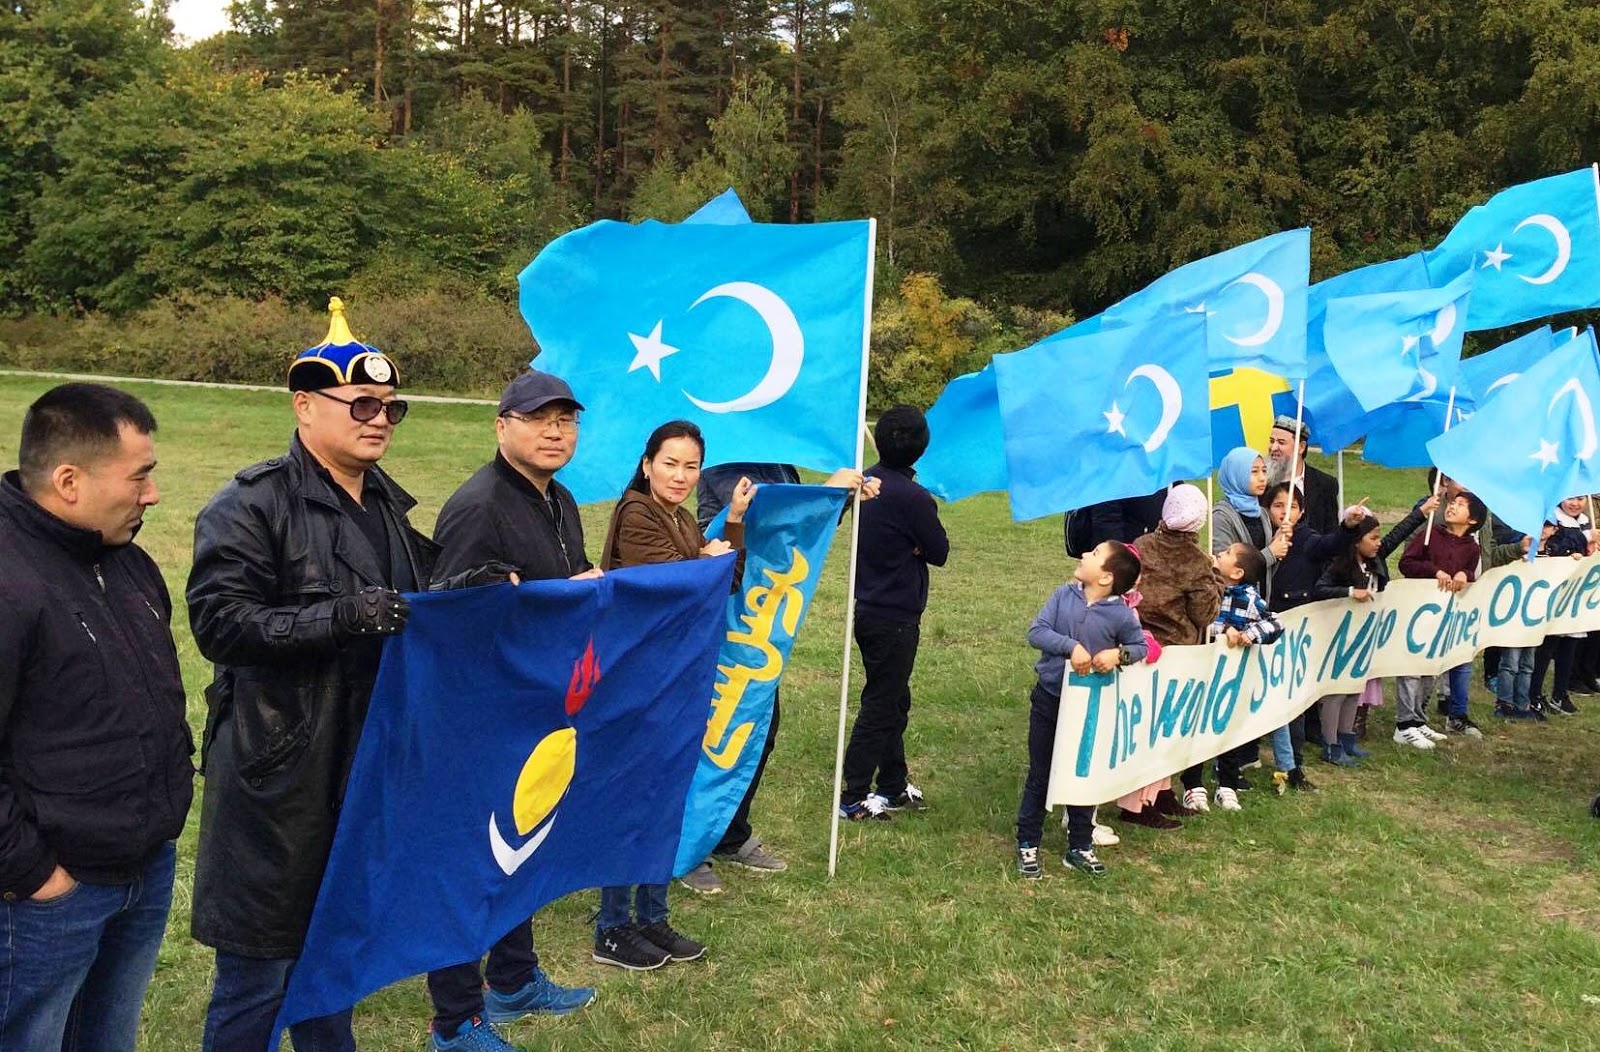 南蒙古时事评论: 2020年10月1日，蒙古人与各族裔示威者齐聚旧金山中国领事馆，抗议中共“国庆”与极权扩张